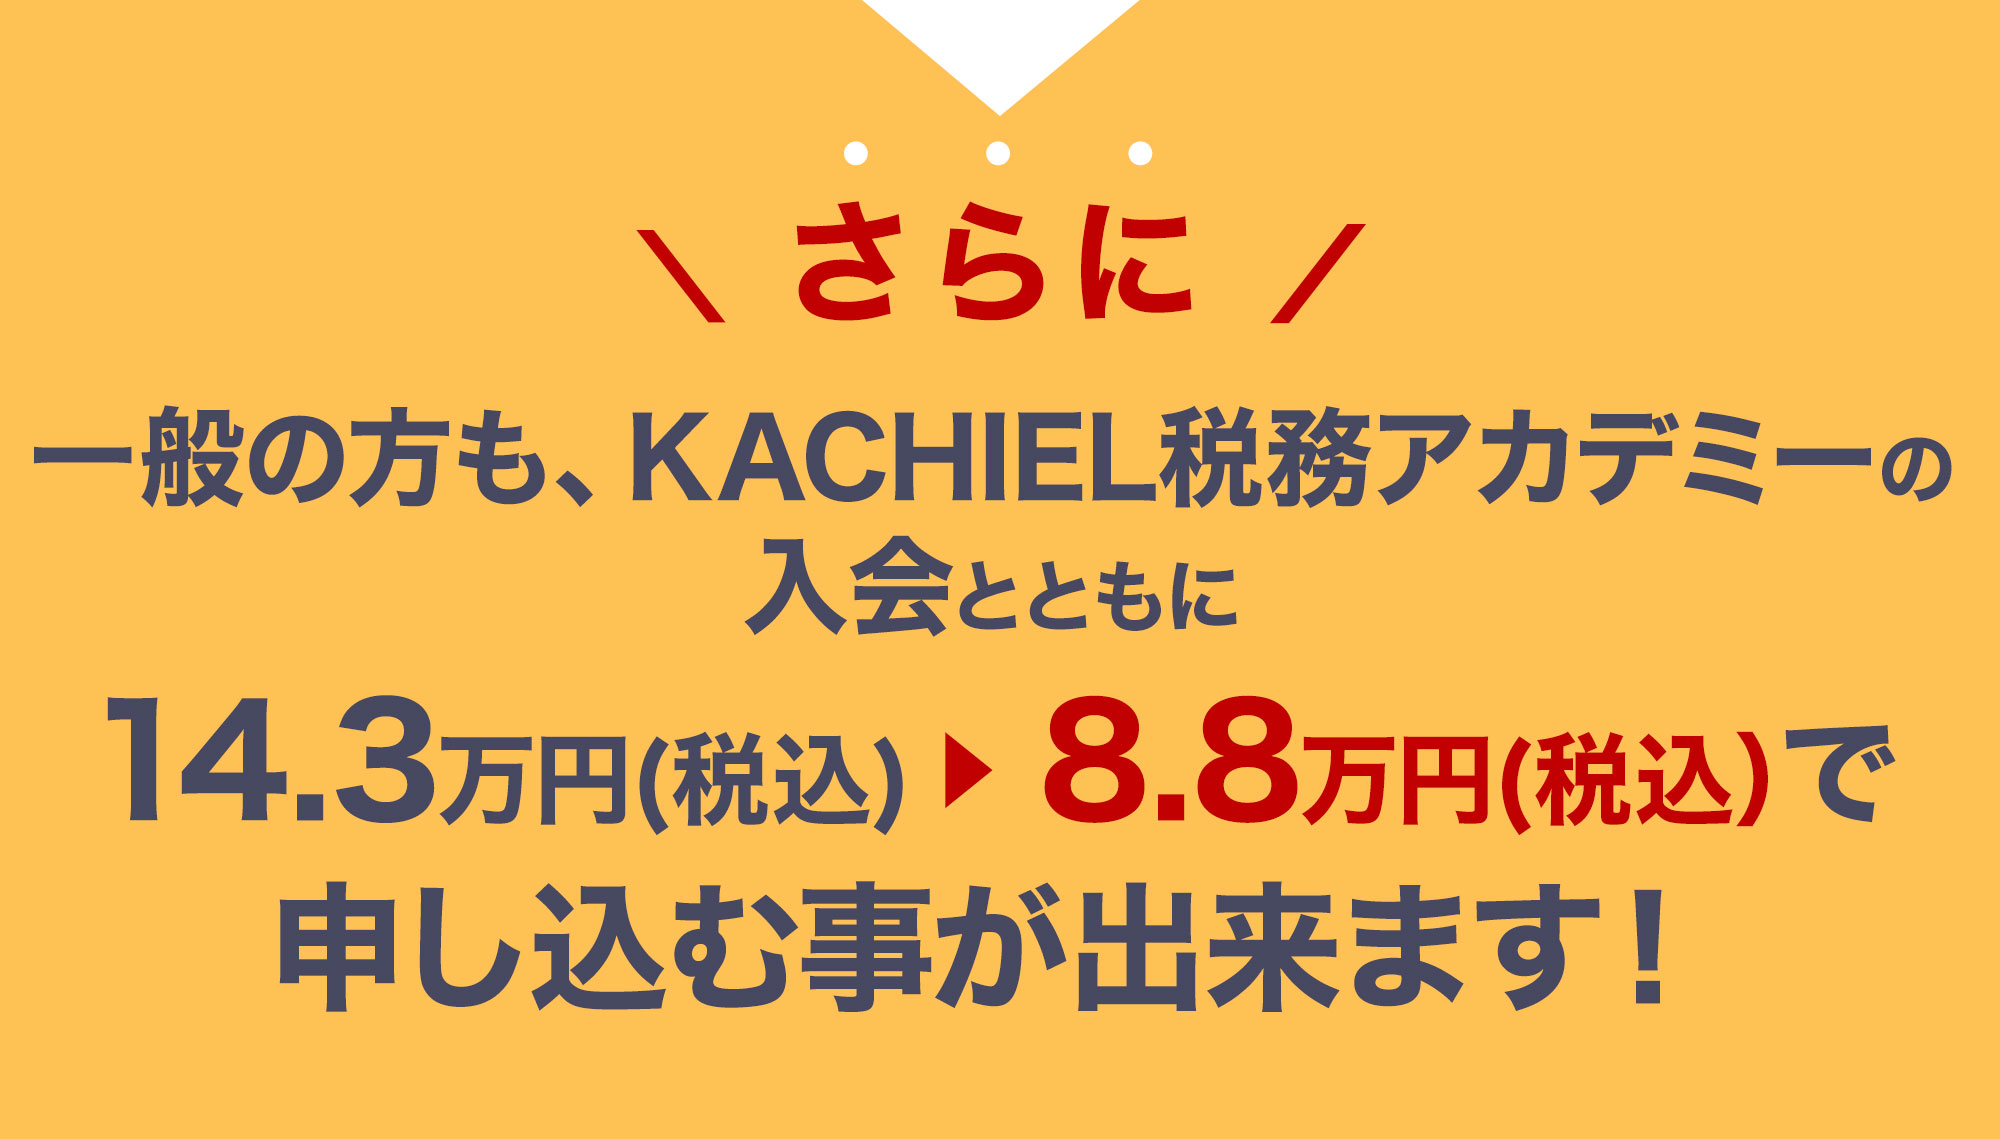 さらに一般の方も、KACHIEL税務アカデミーの入会とともに26万円（税別）から10万円（税別）で申し込む事が出来ます！